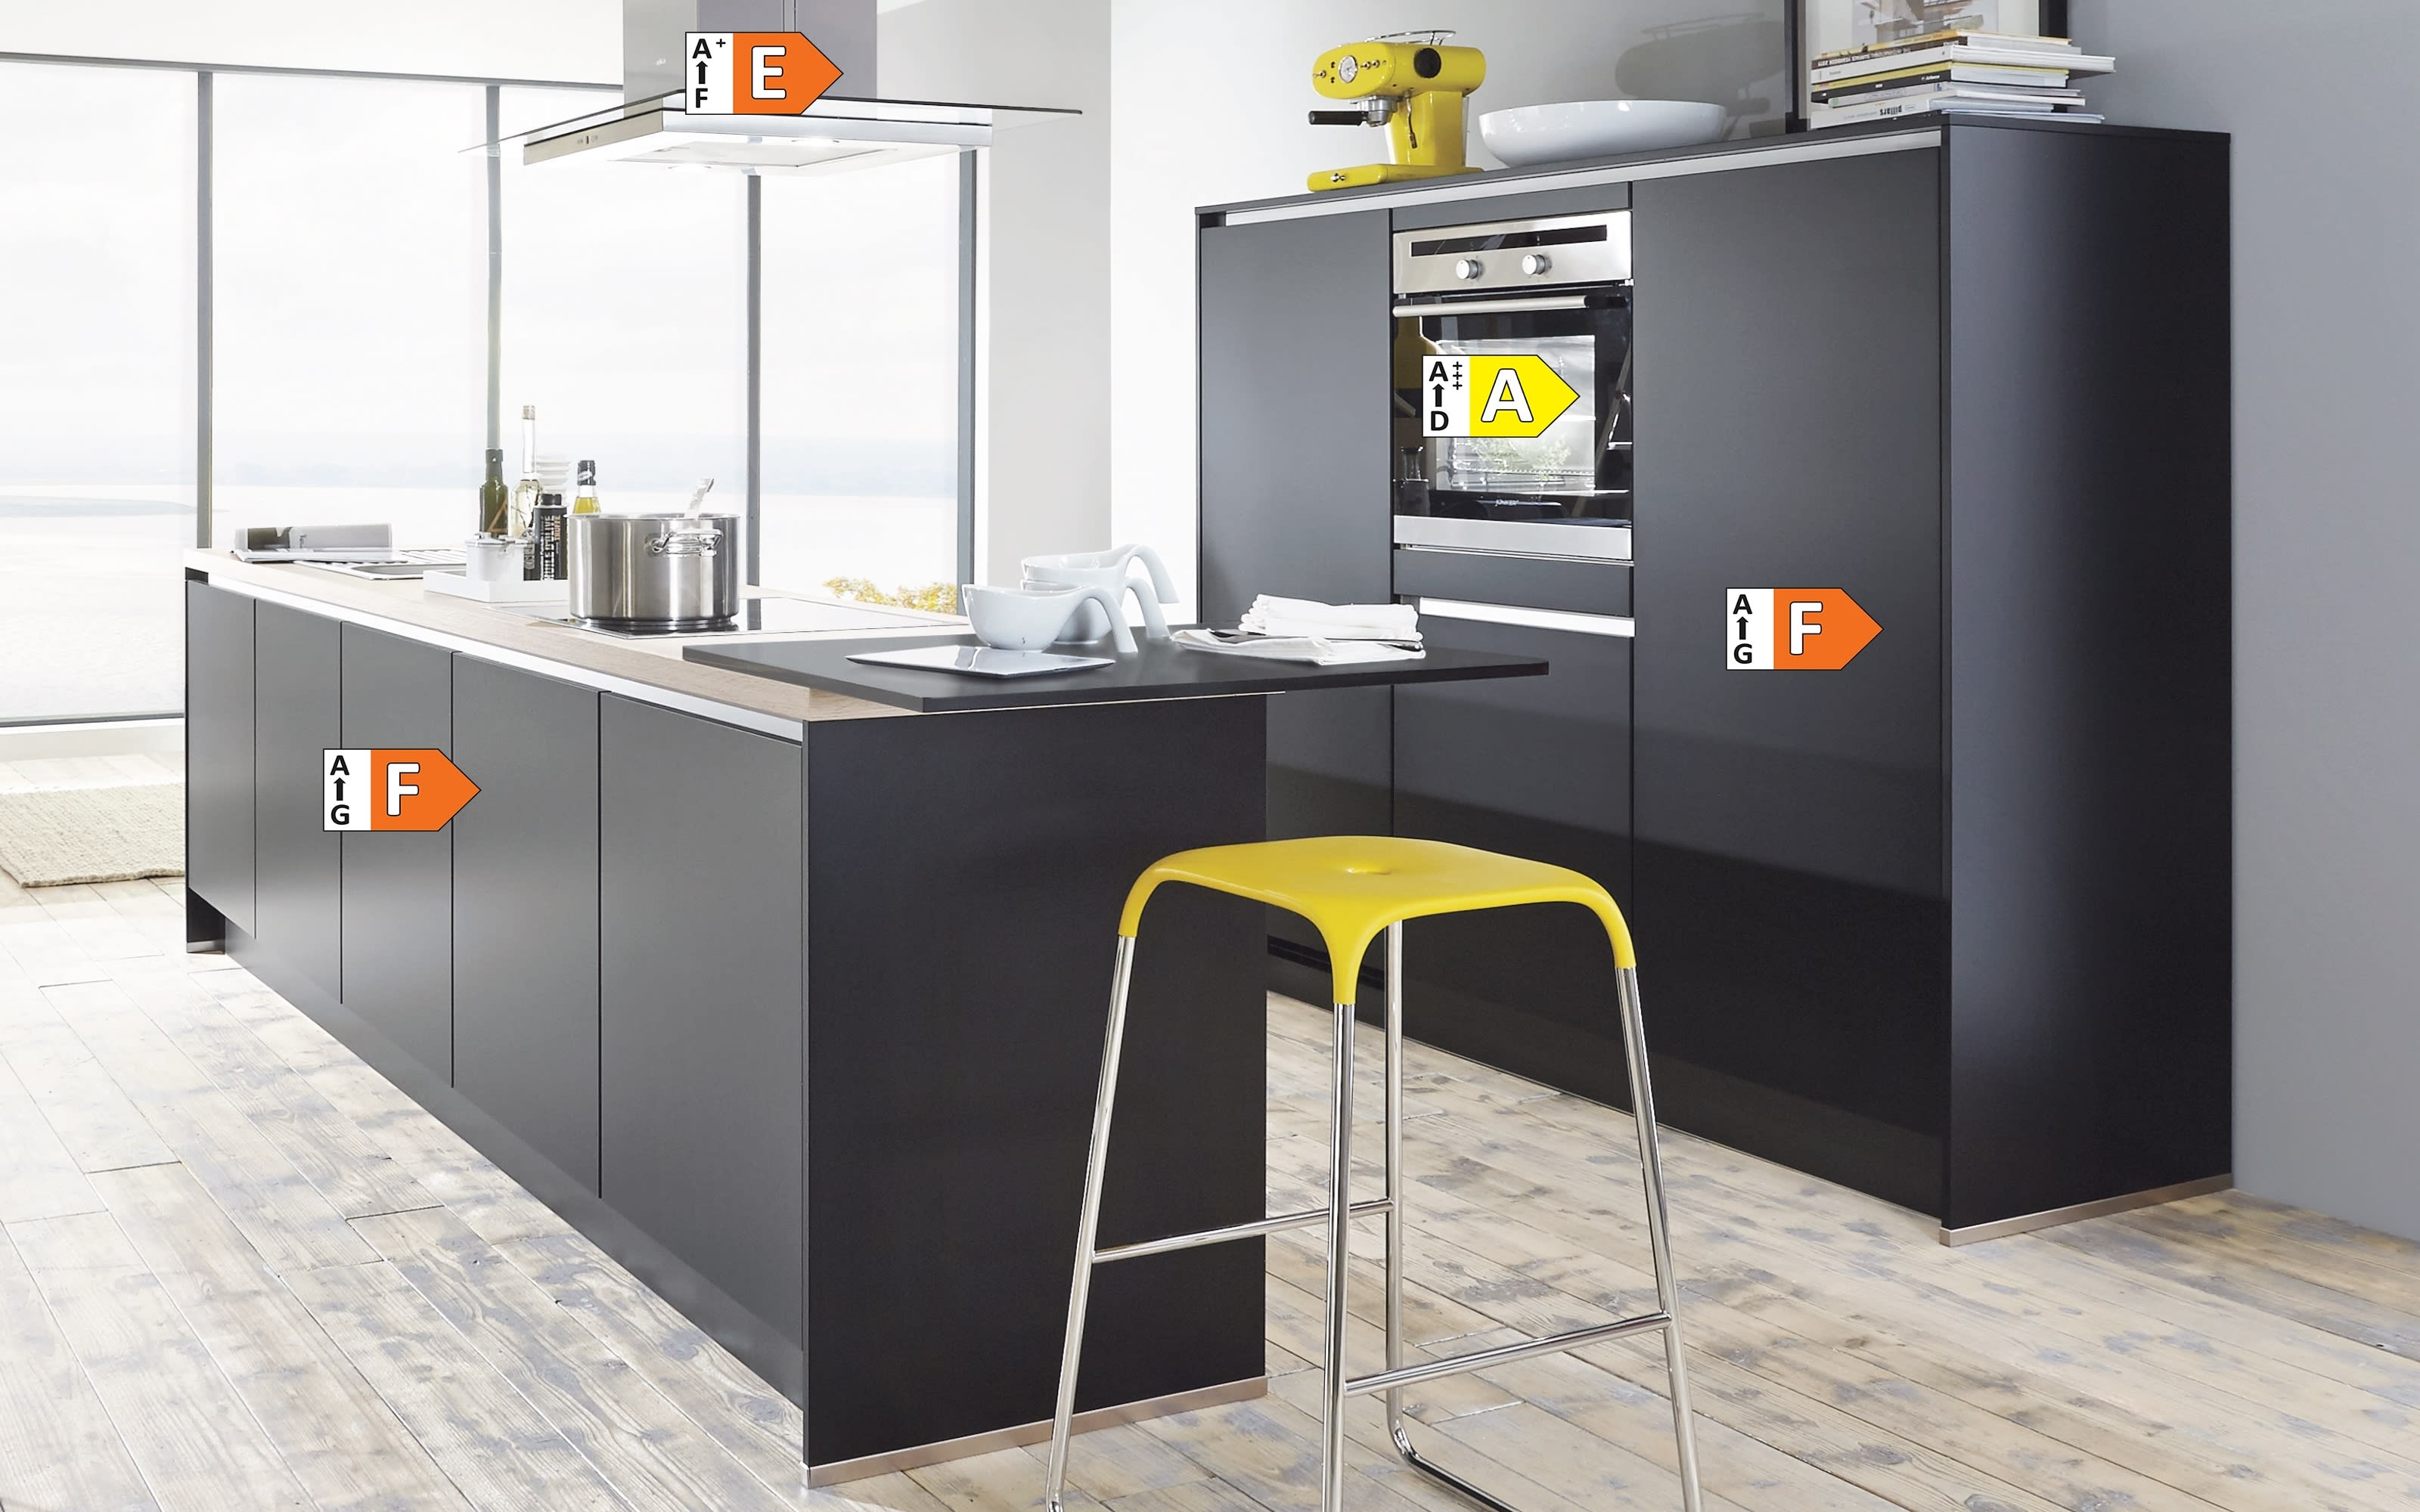 Einbauküche Touch, schwarz supermatt, inklusive Elektrogeräte